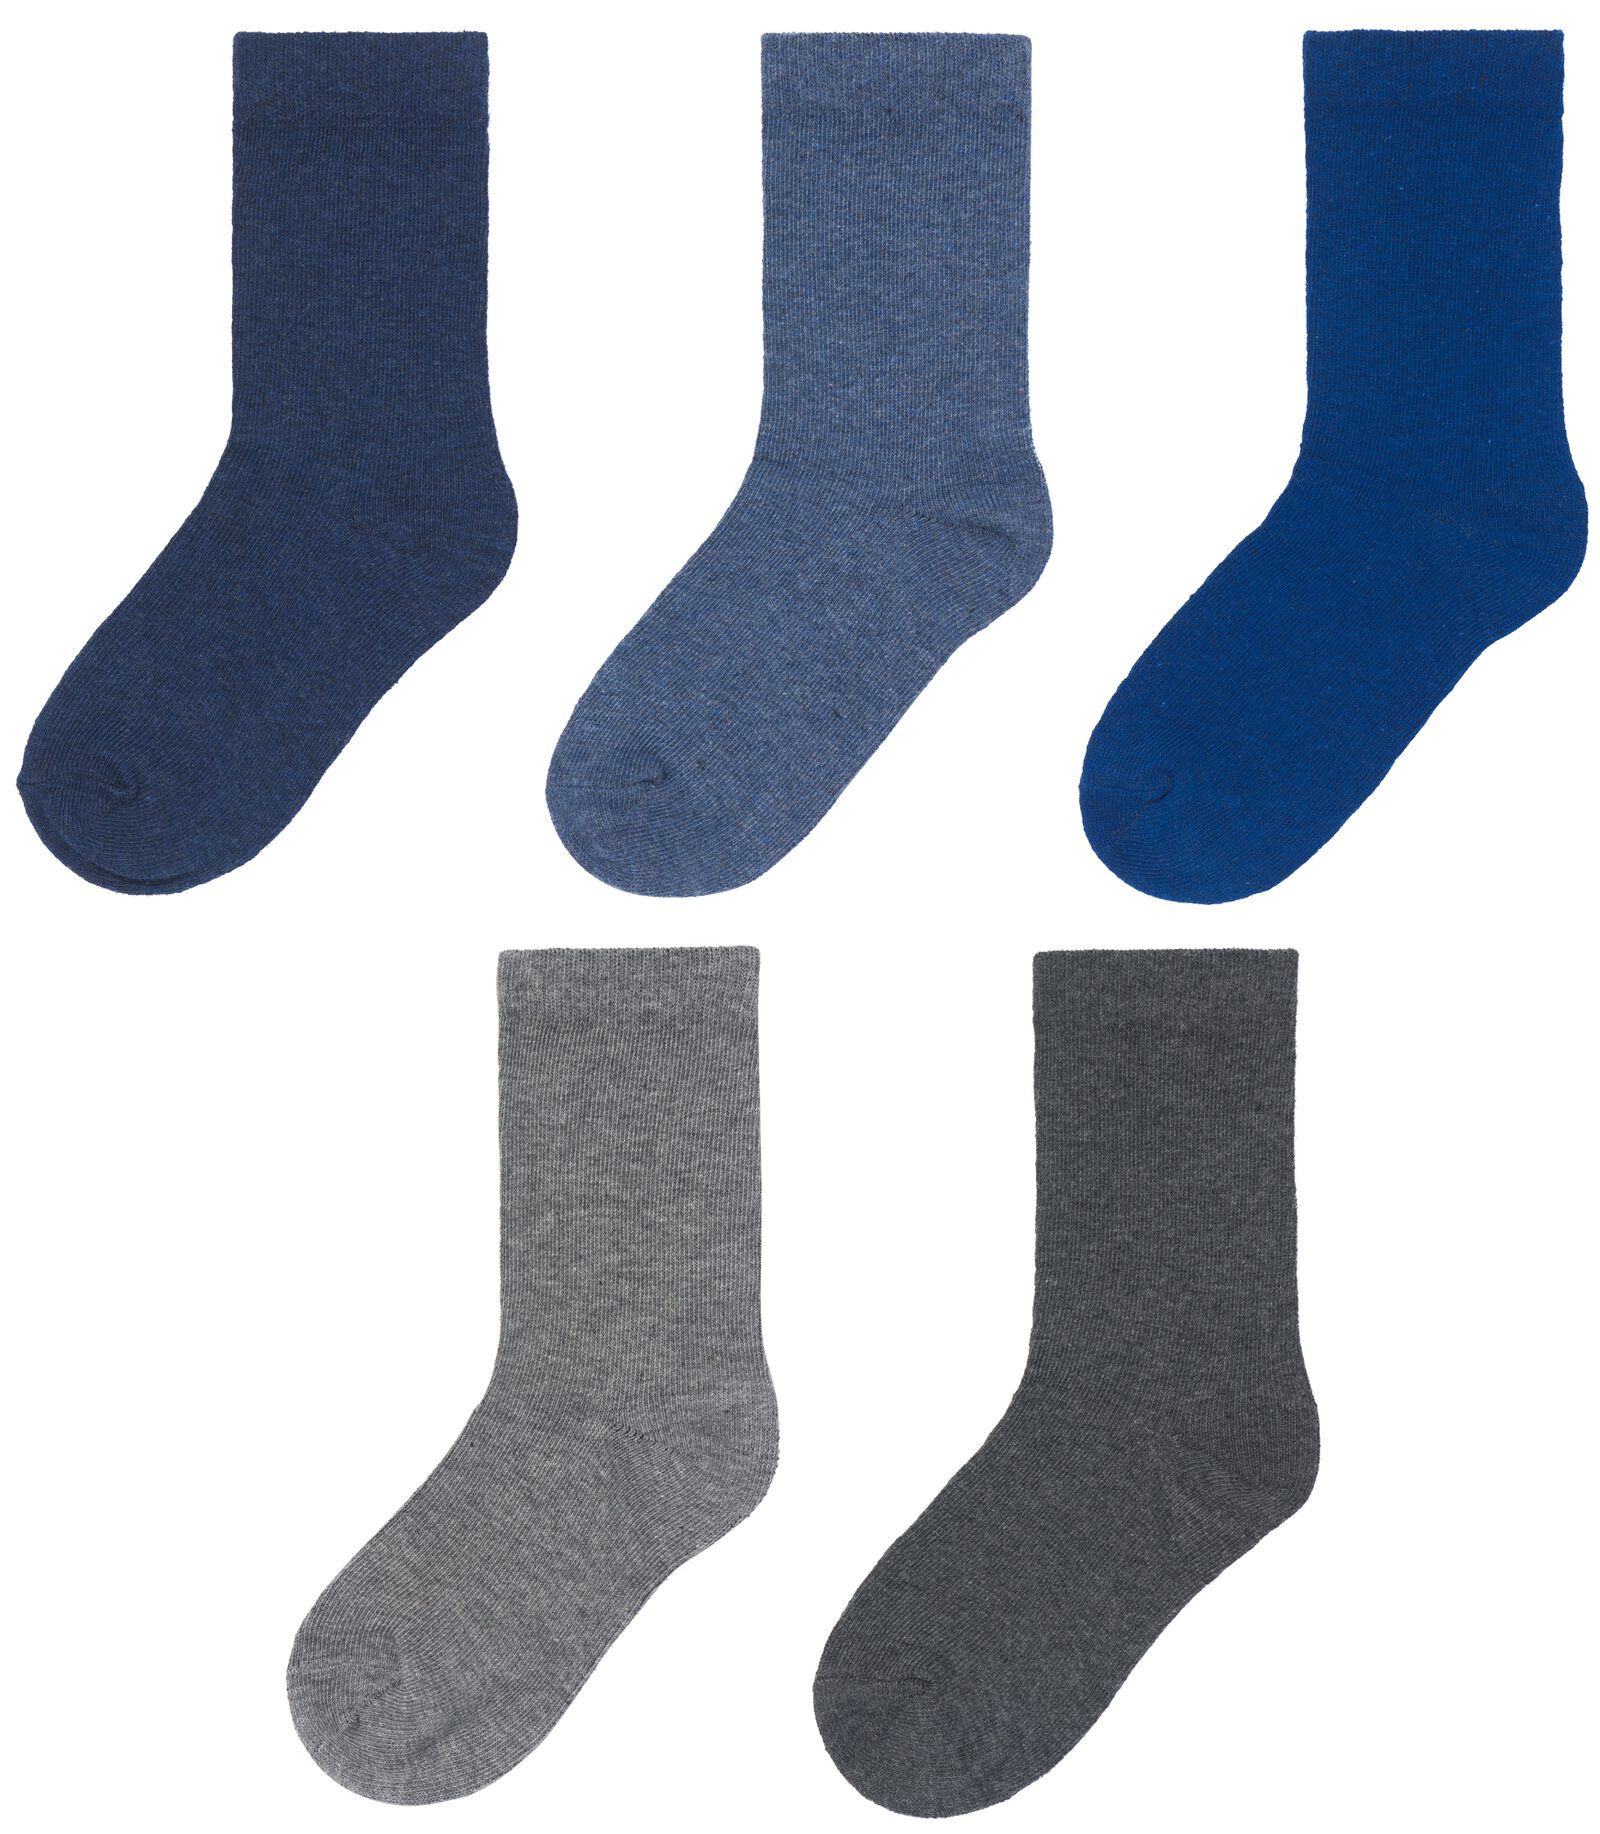 kinder sokken met katoen - 5 paar blauw 23/26 - 4360071 - HEMA